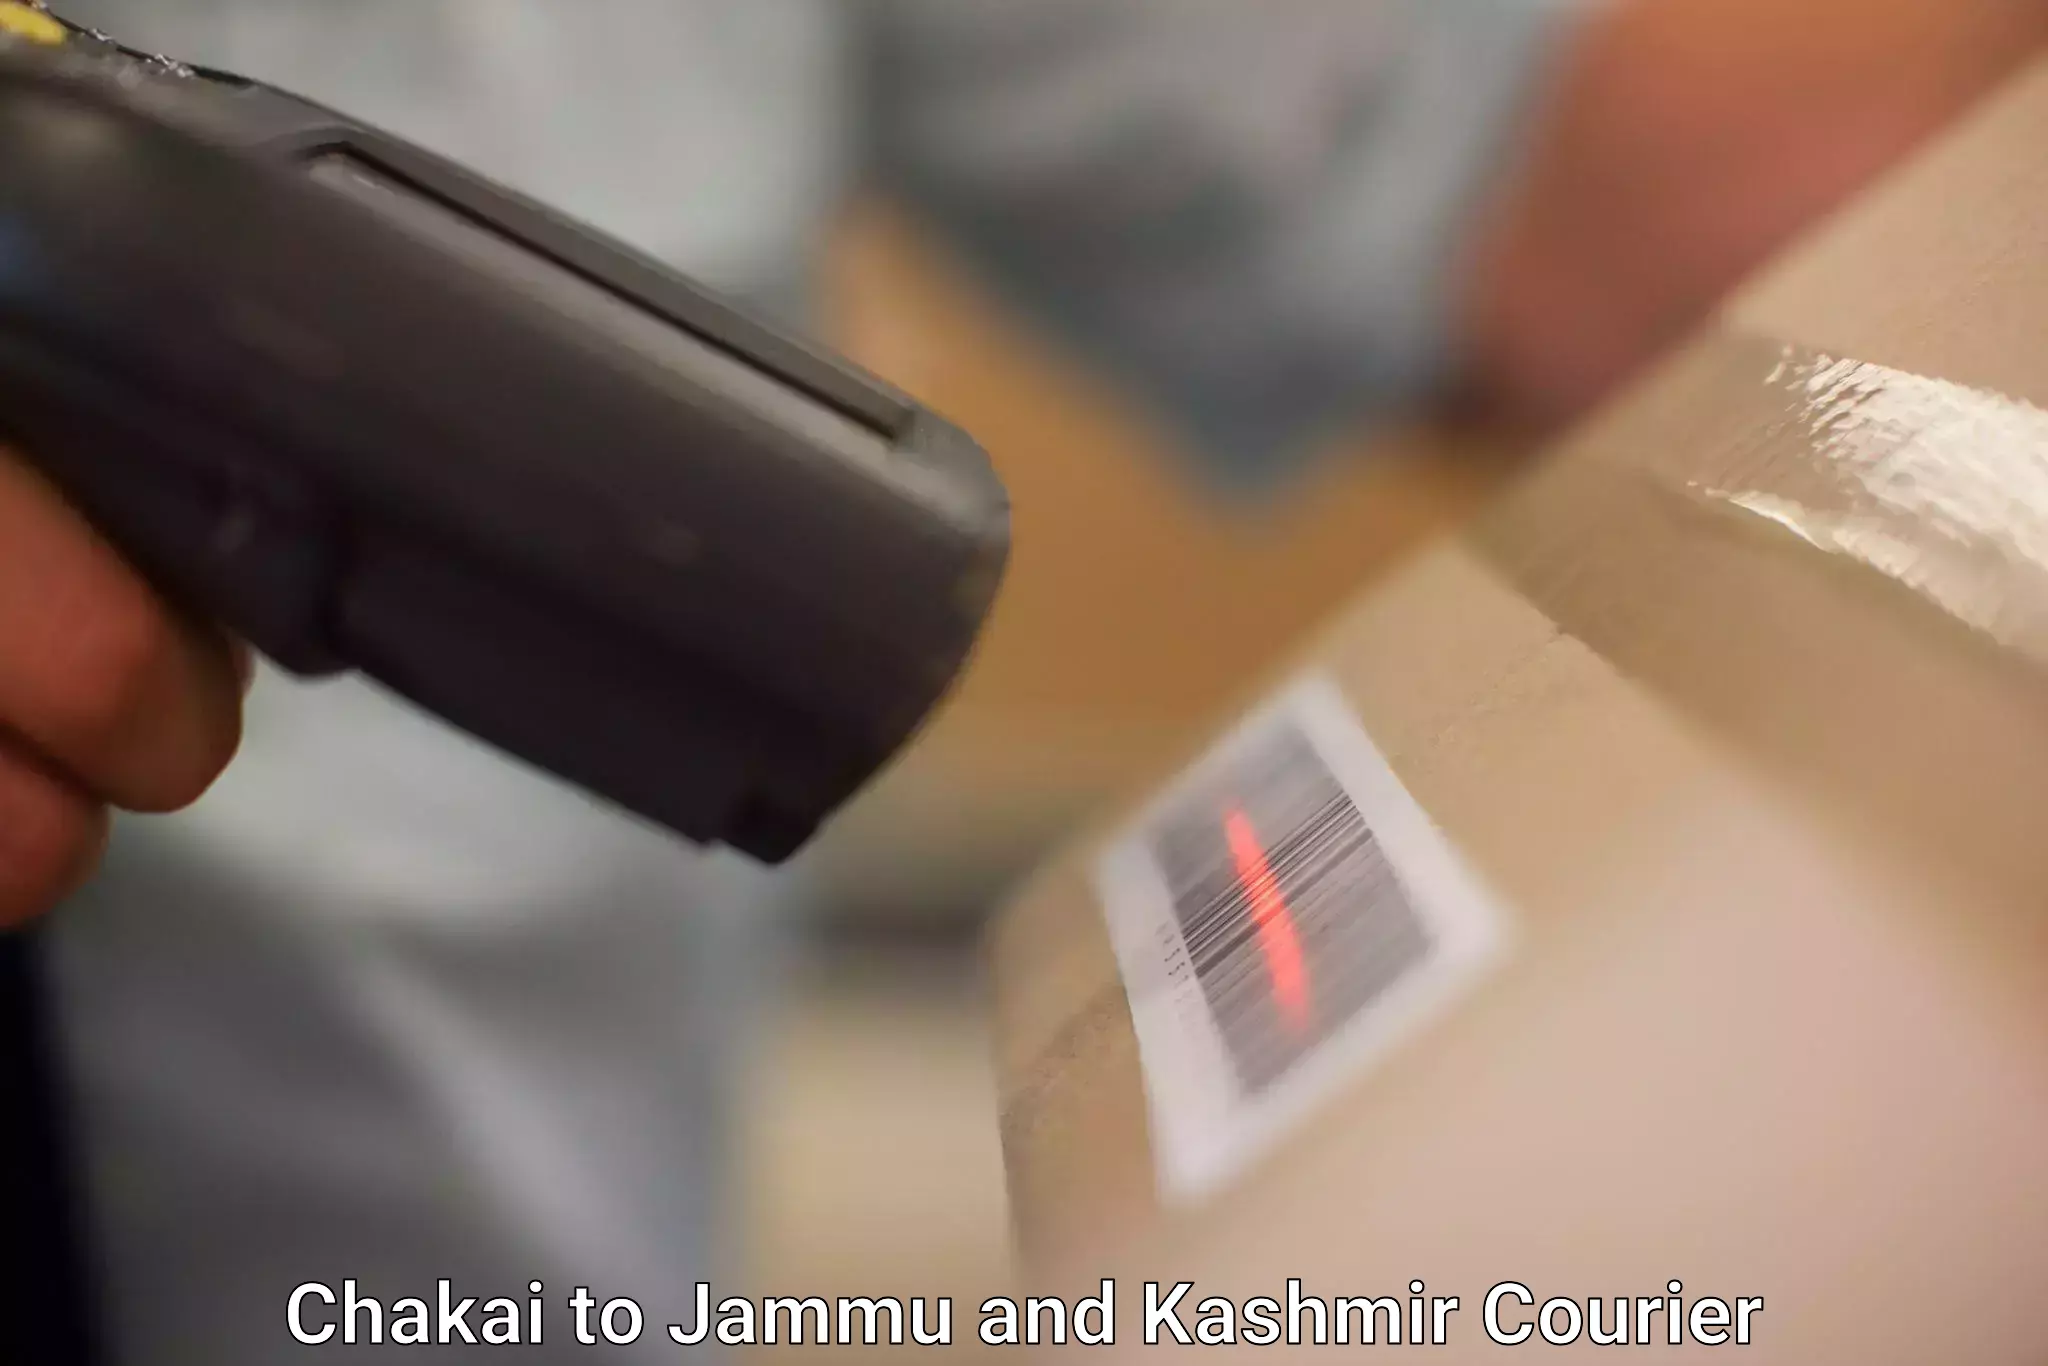 Express mail service Chakai to University of Jammu